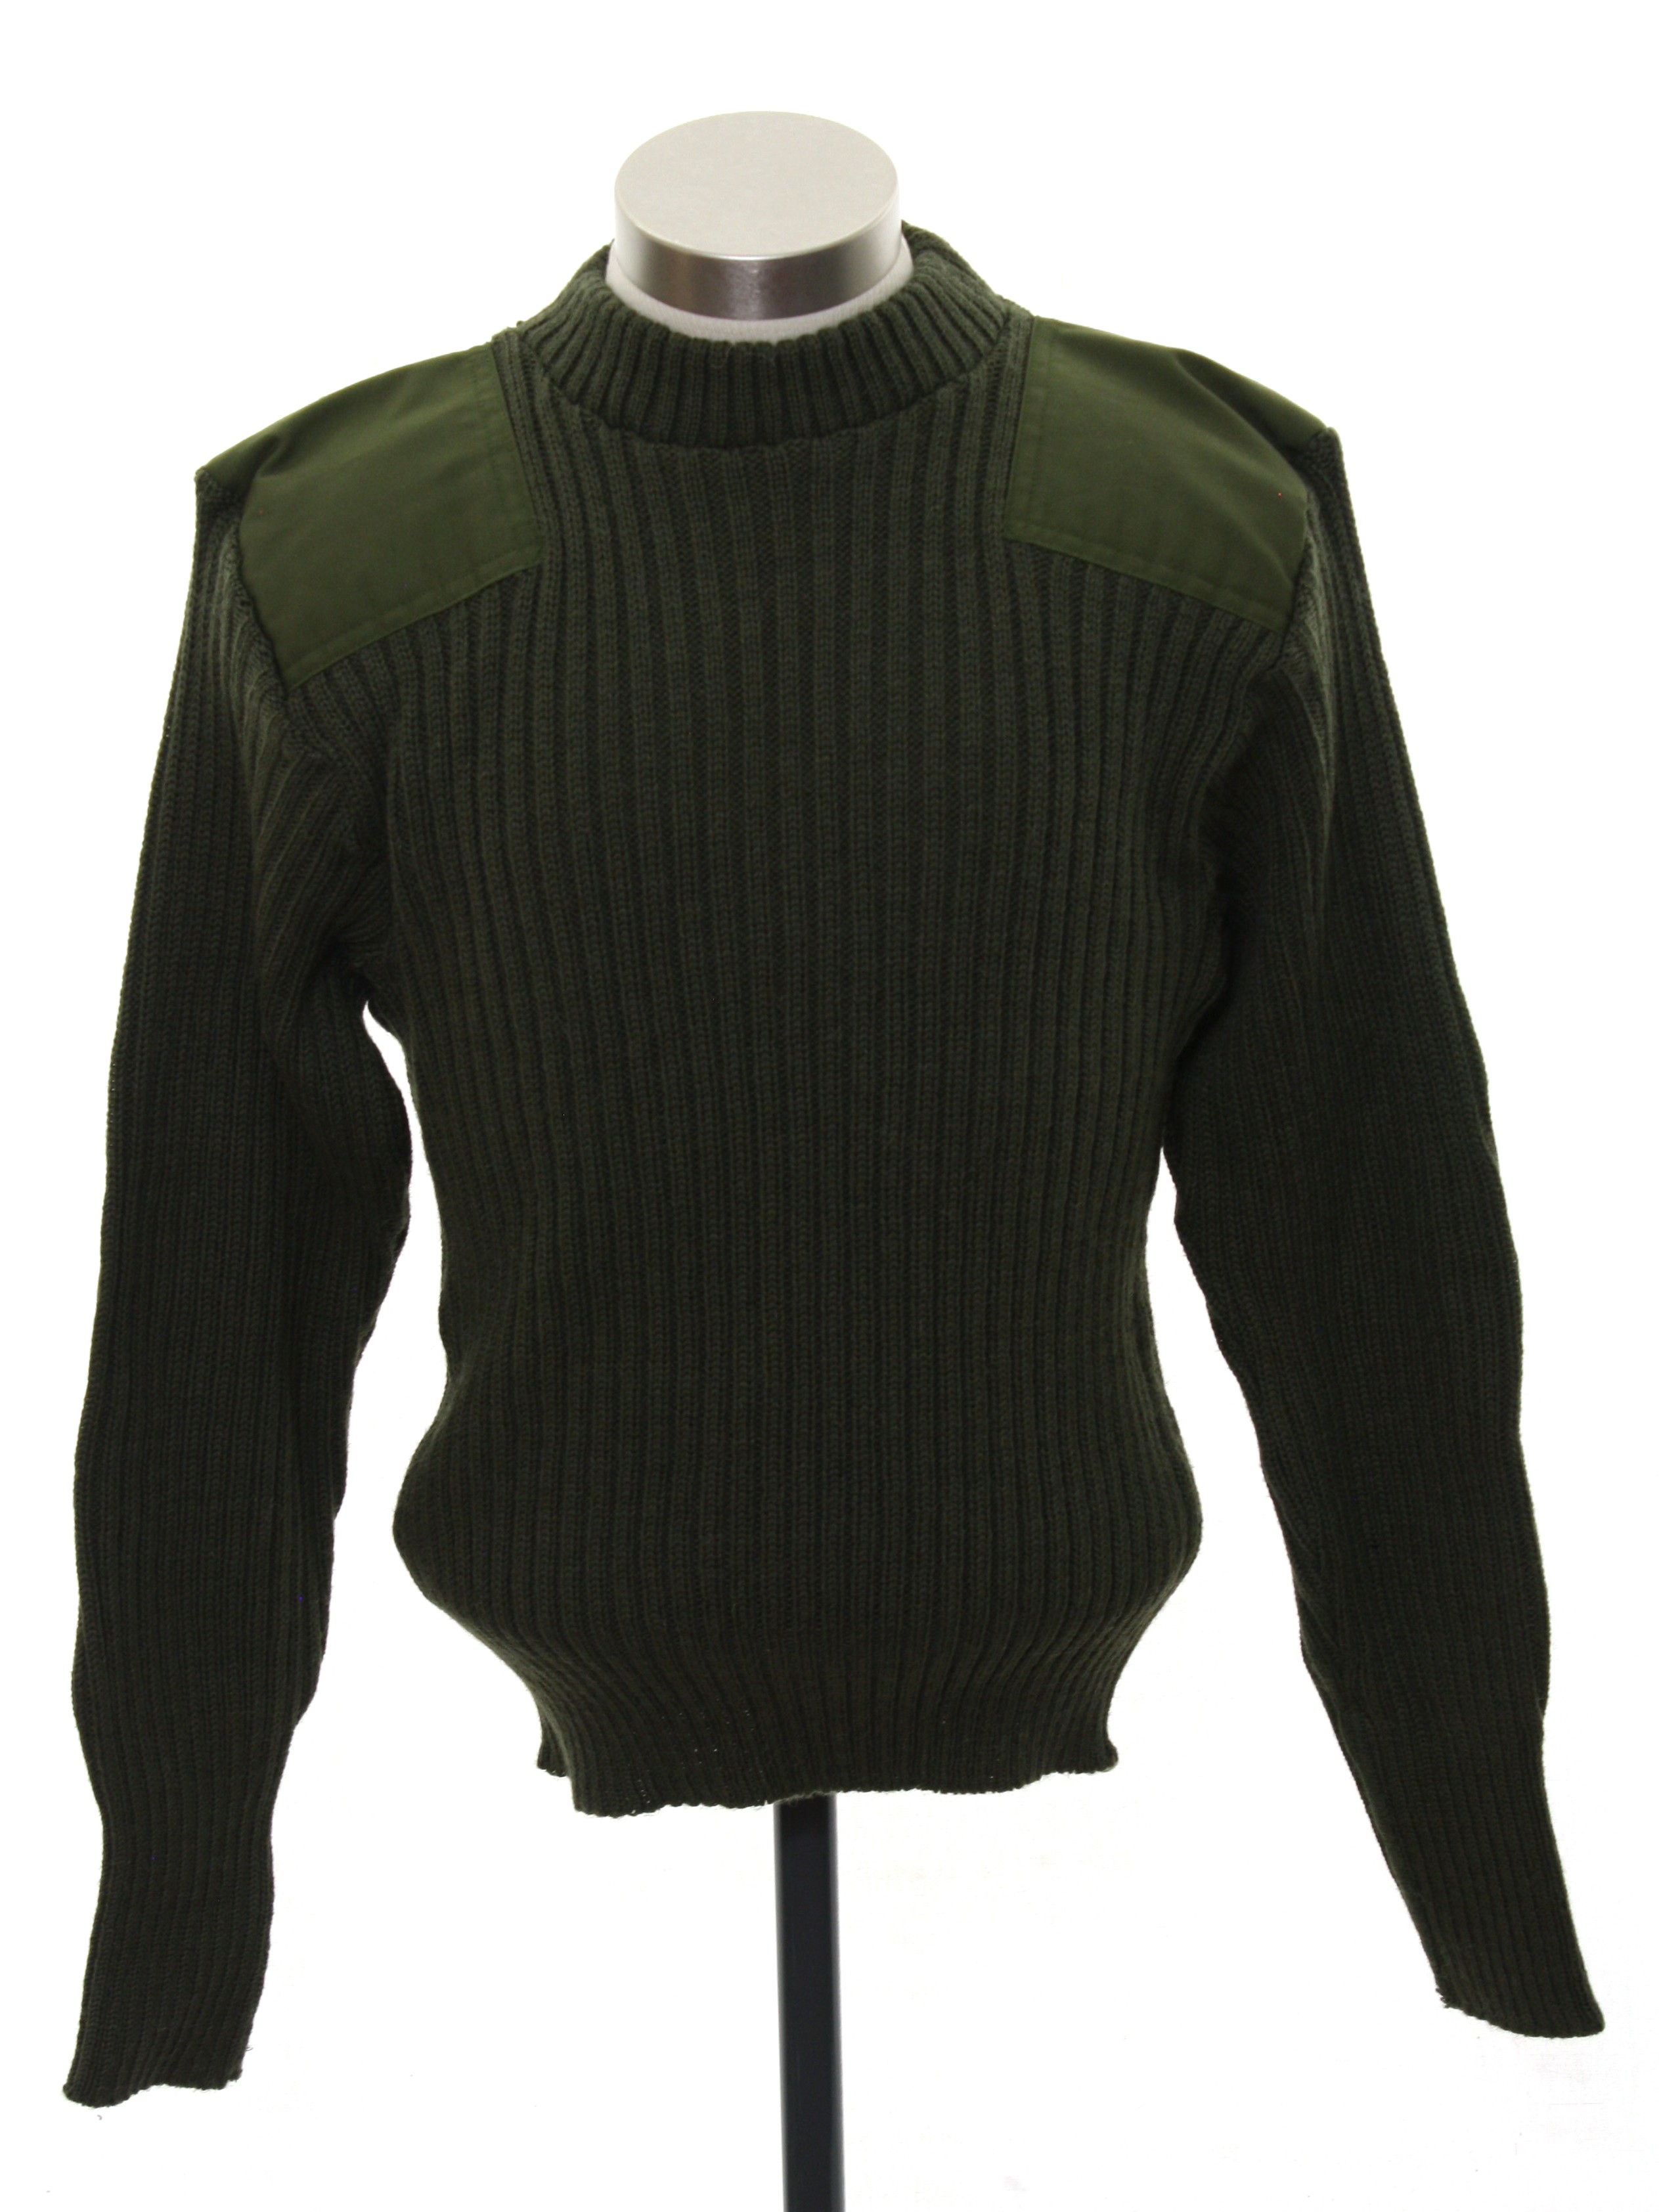 Eighties Military Equipment Sweater: 80s -Military Equipment- Mens ...